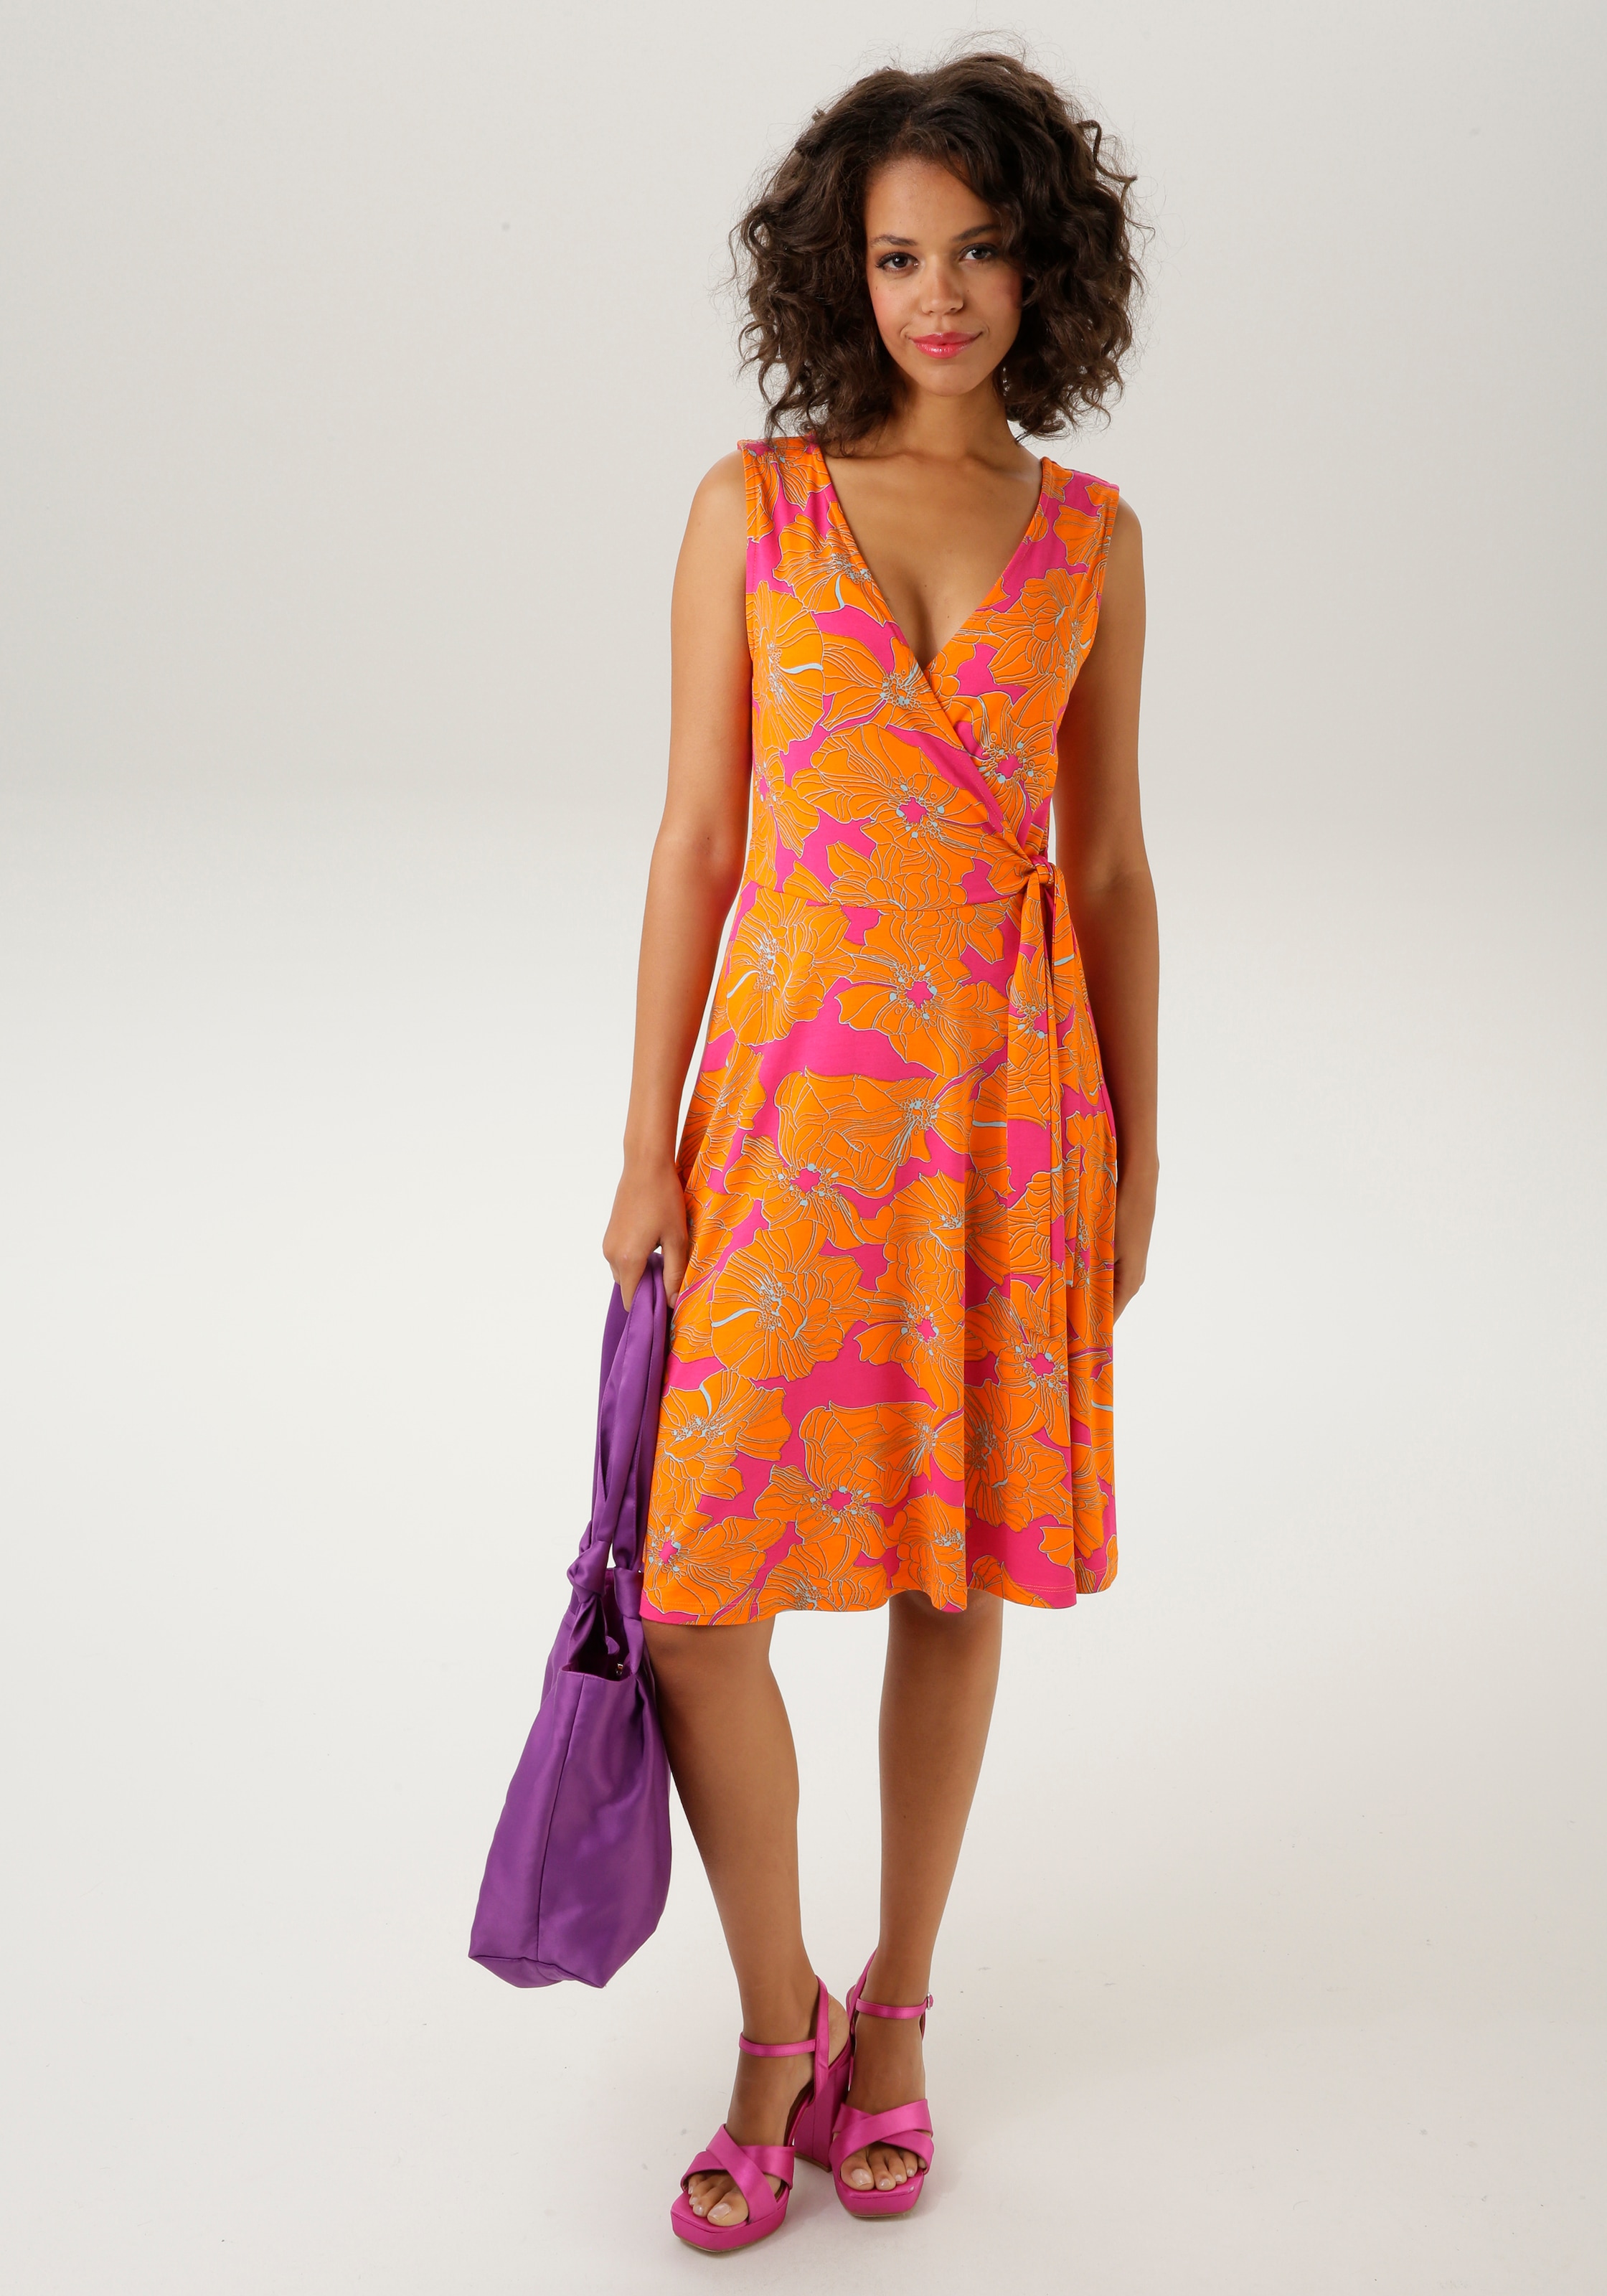 - farbintensivem, KOLLEKTION großflächigem Sommerkleid, CASUAL NEUE Blumendruck mit kaufen Aniston